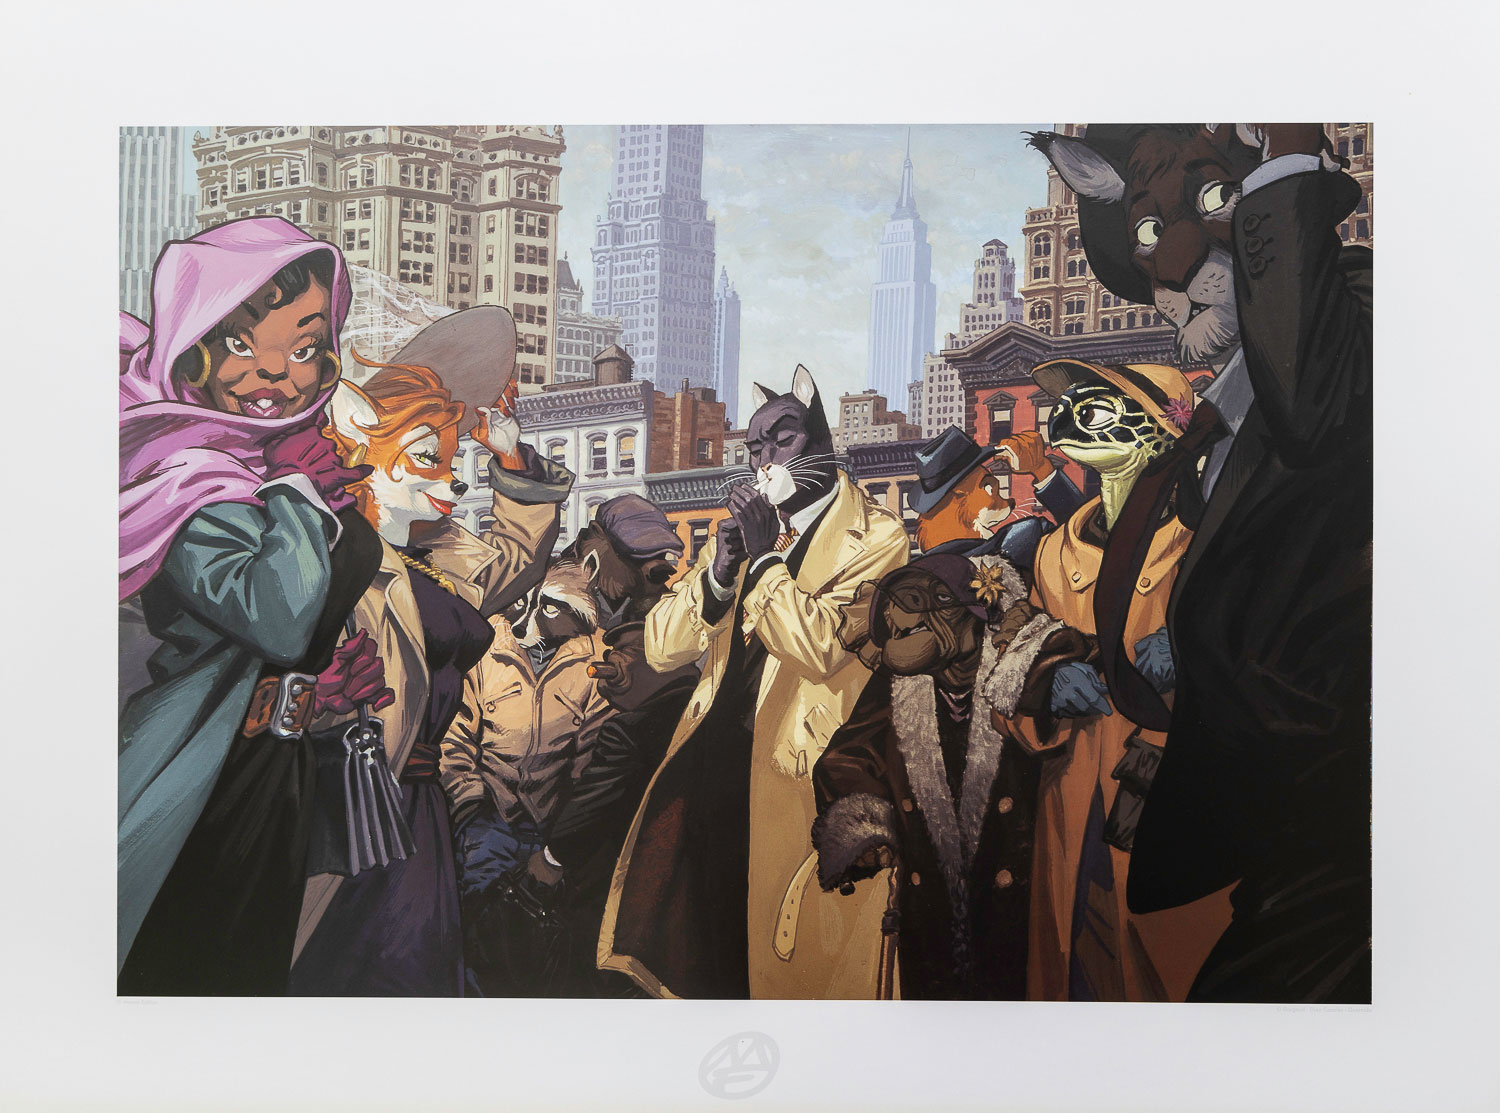 Lámina Juanjo Guarnido : Blacksad en la muchedumbre, New York